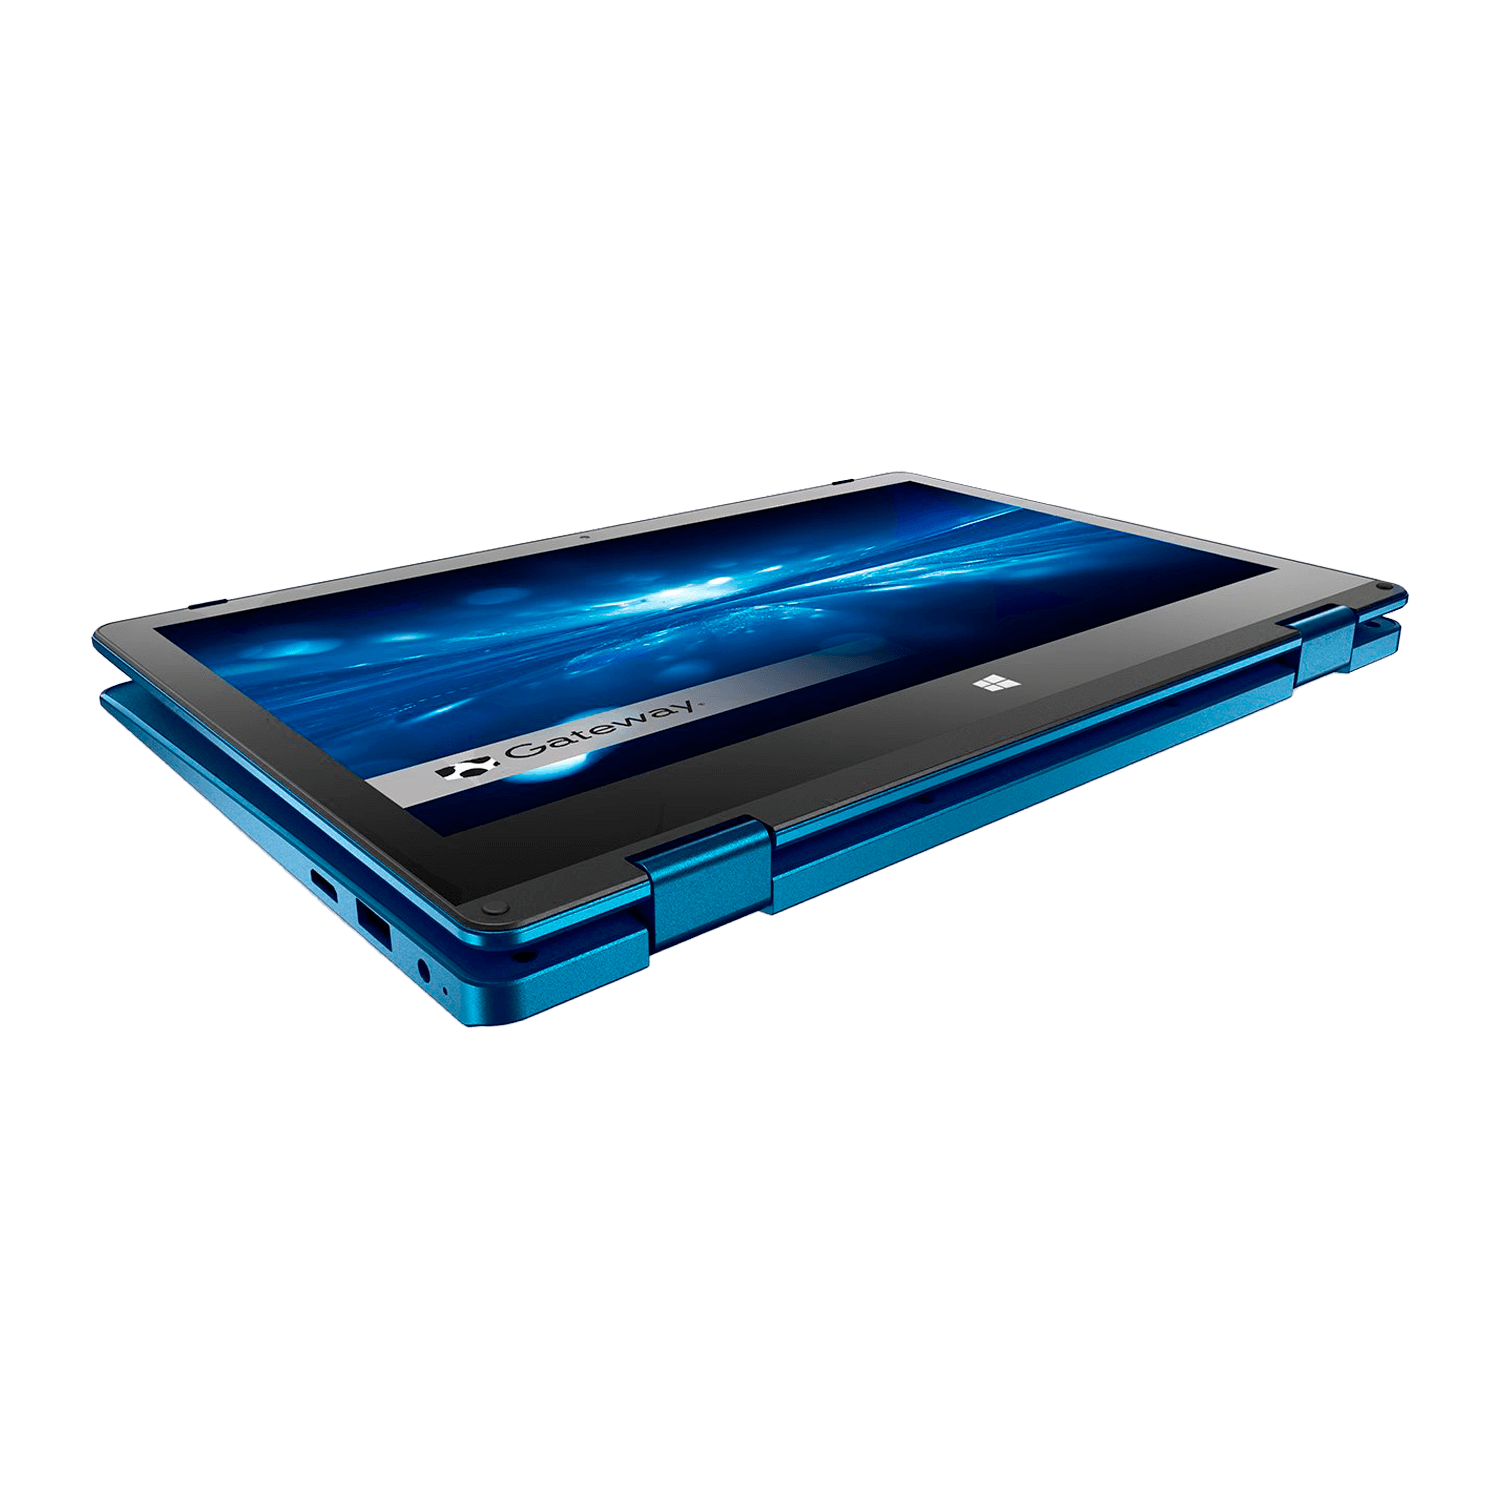 Notebook Gateway GWTC116-2BL Intel Celeron-N4020 4GB RAM / 64GB / Tela 11.6" Touchscreen / Windows 10 - Azul